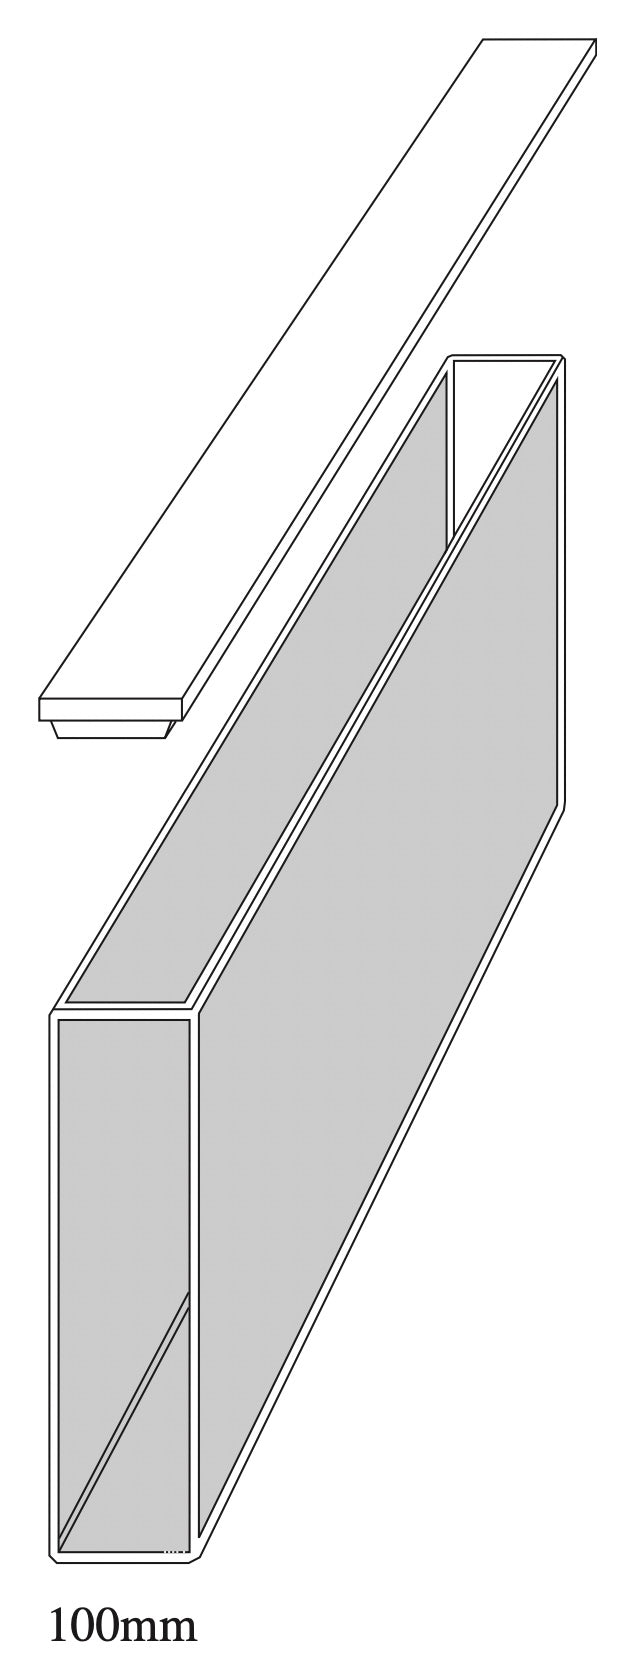 Starna 1-I-100 Standard Rectangular Infrasil Cuvette, 100mm Pathlength